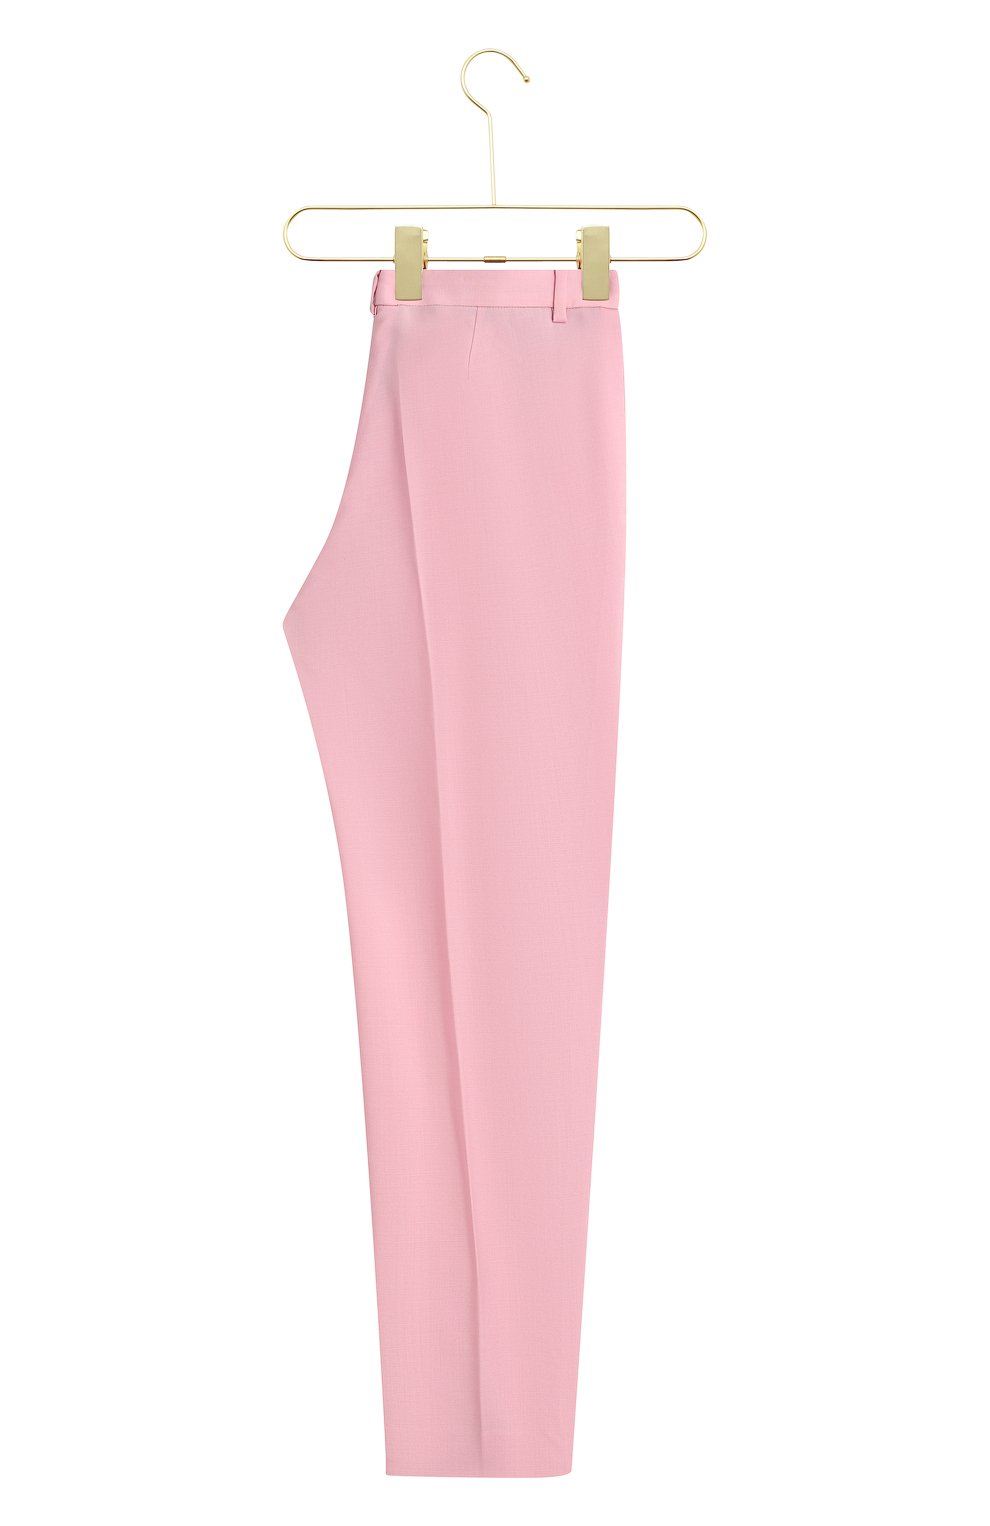 Шерстяные брюки | Versace | Розовый - 3